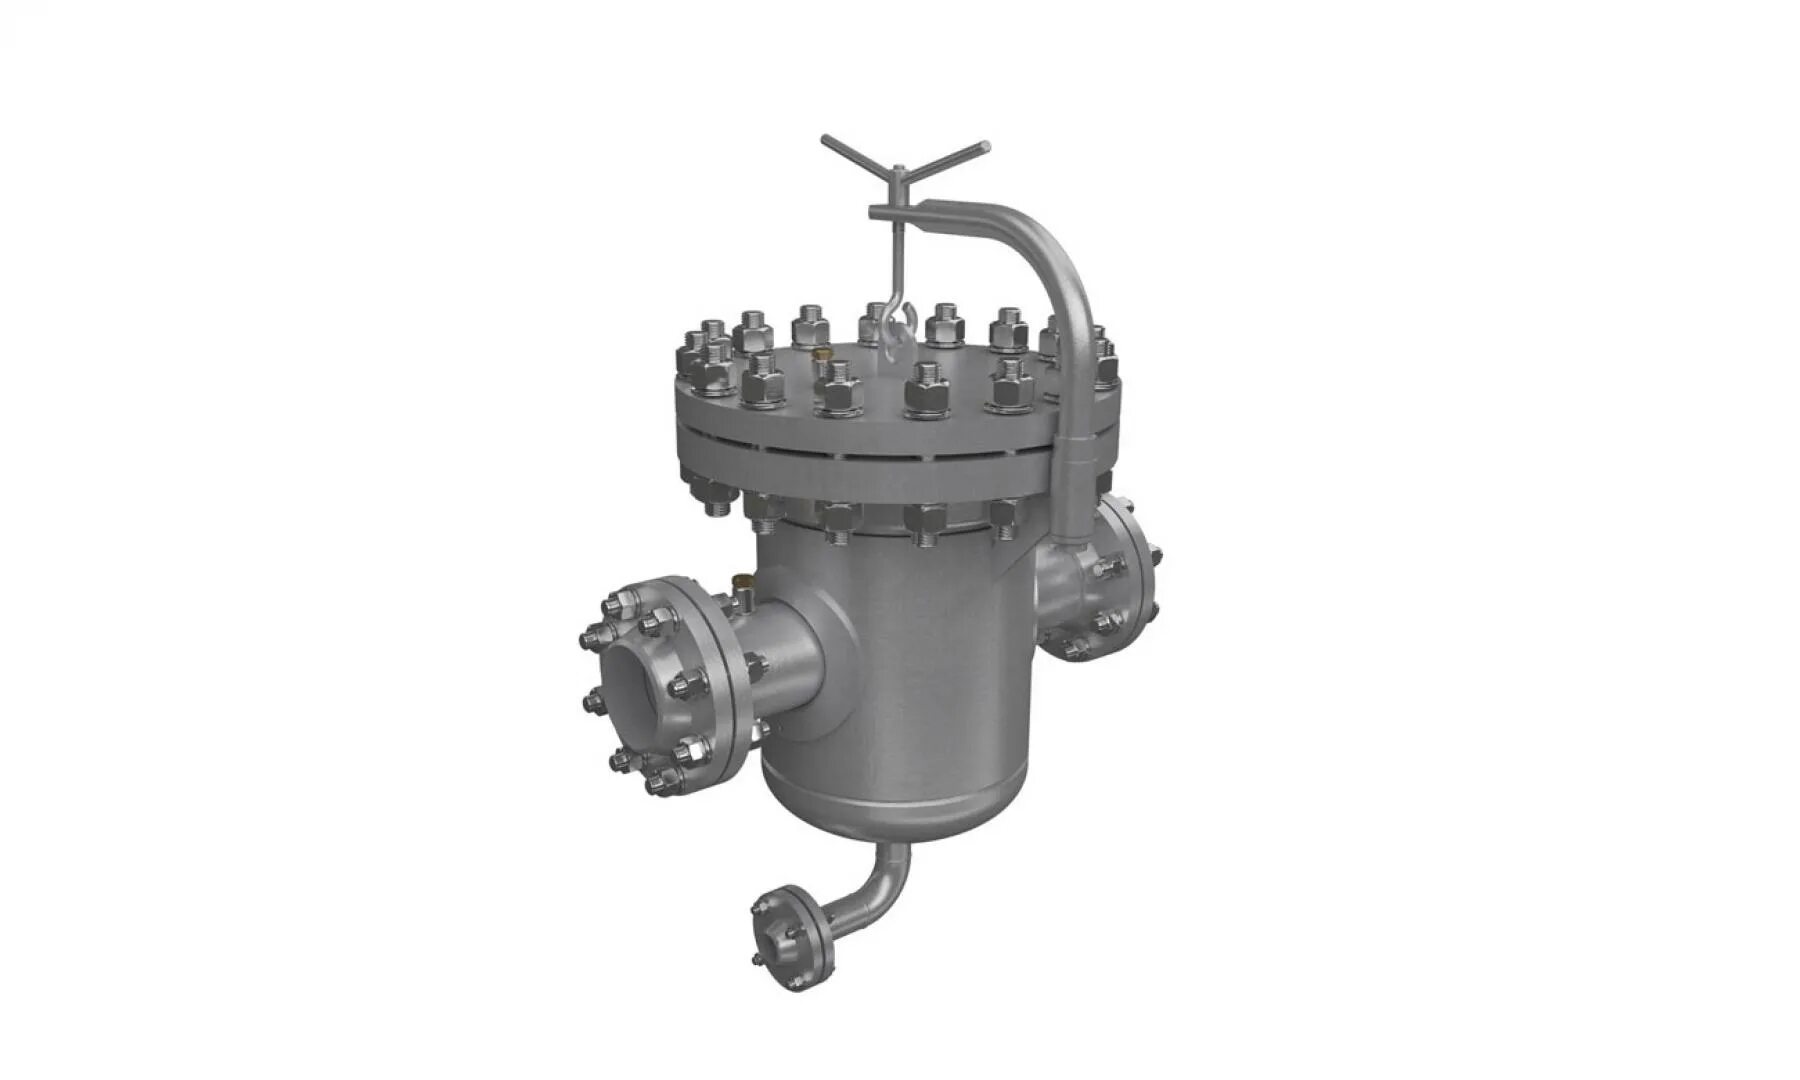 Фильтр жидкостный ФЖ-НП-100-16-1.0-2-ухл1 ст 09г2с. Фильтр сепаратор Нефтегазоборудование ФС-200 объем. Фильтр ФЖ-300/16. Фильтр жидкостный Ду 500.